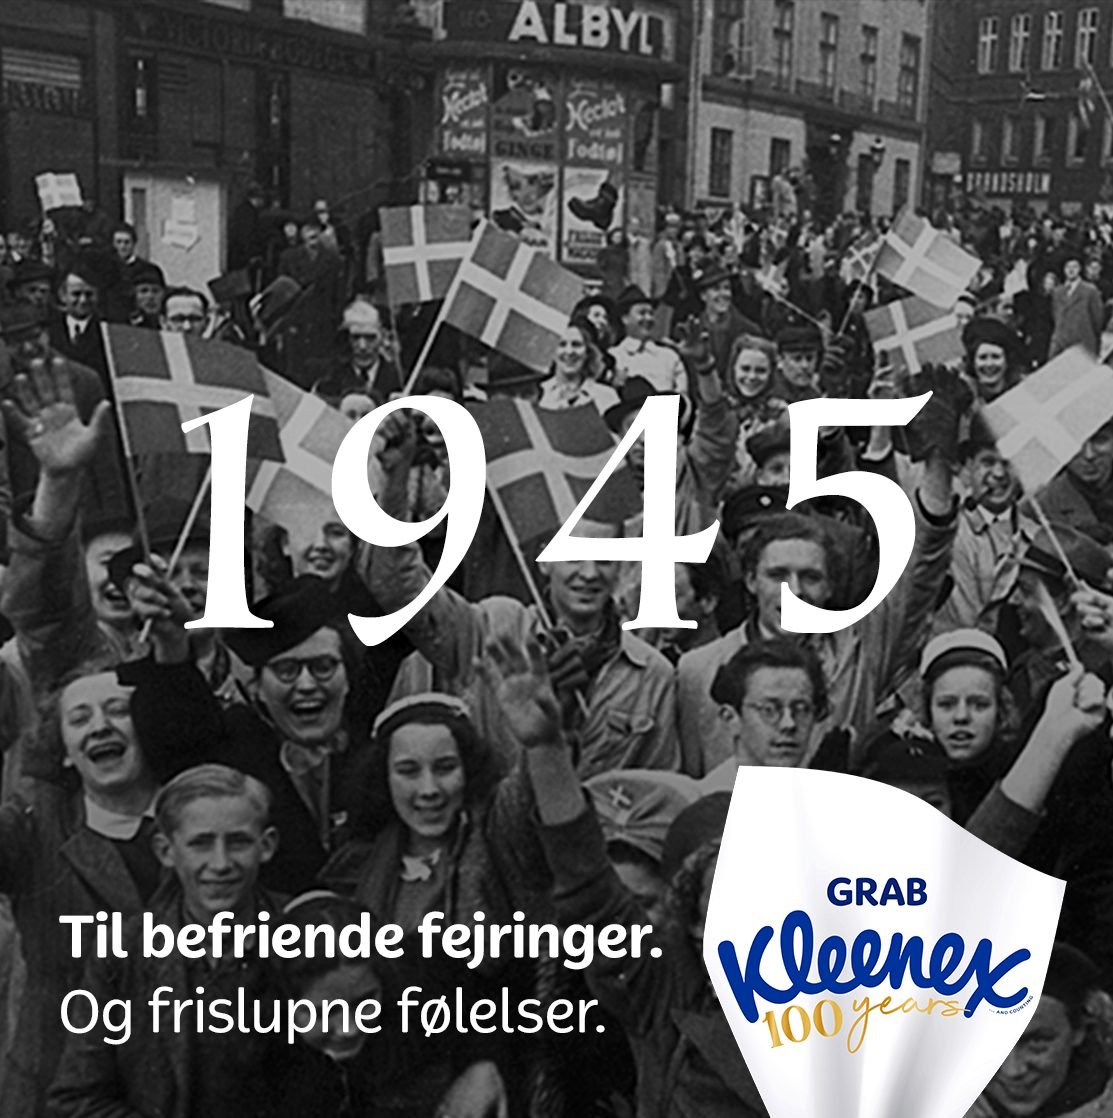 Danmarks befrielse er ikke bare et historisk &oslash;jeblik, det er en hyldest til vores nationale styrke og sammenhold. Er du en af dem, der t&aelig;nder et lys p&aring; 4. maj for at mindes vores fortid og fejre vores fremtid? 🕯️🇩🇰 #100yearsandc